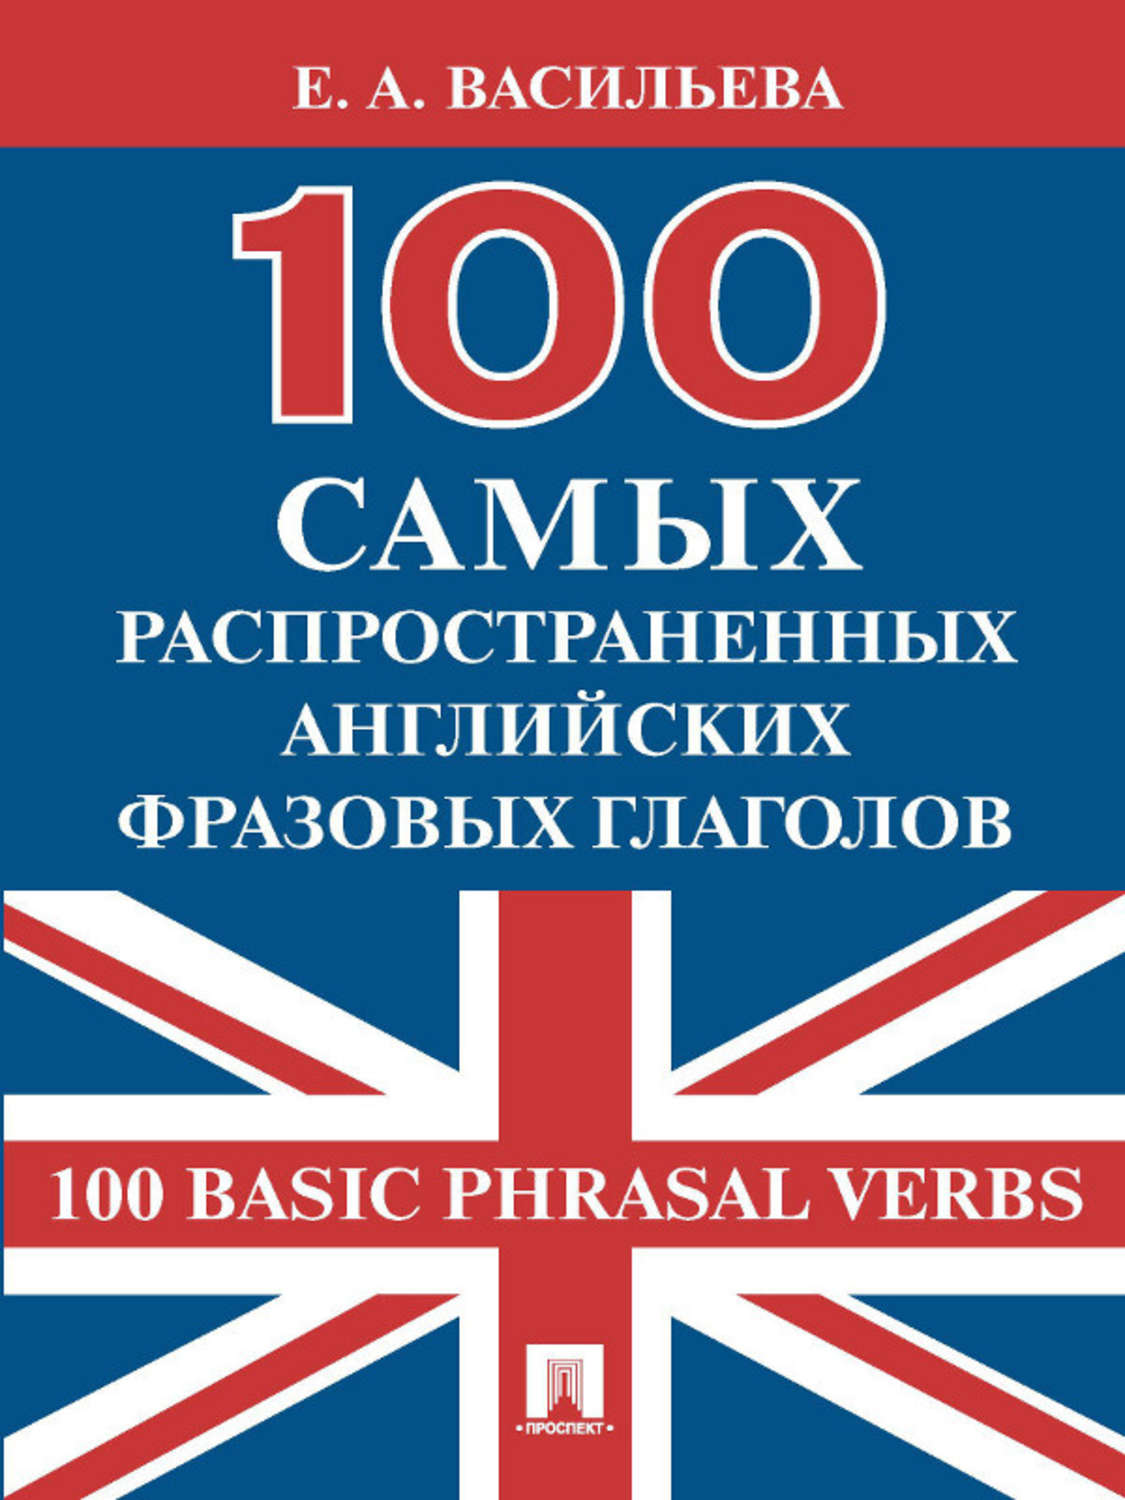 LearnWords словари для изучения иностранного языка на ПК